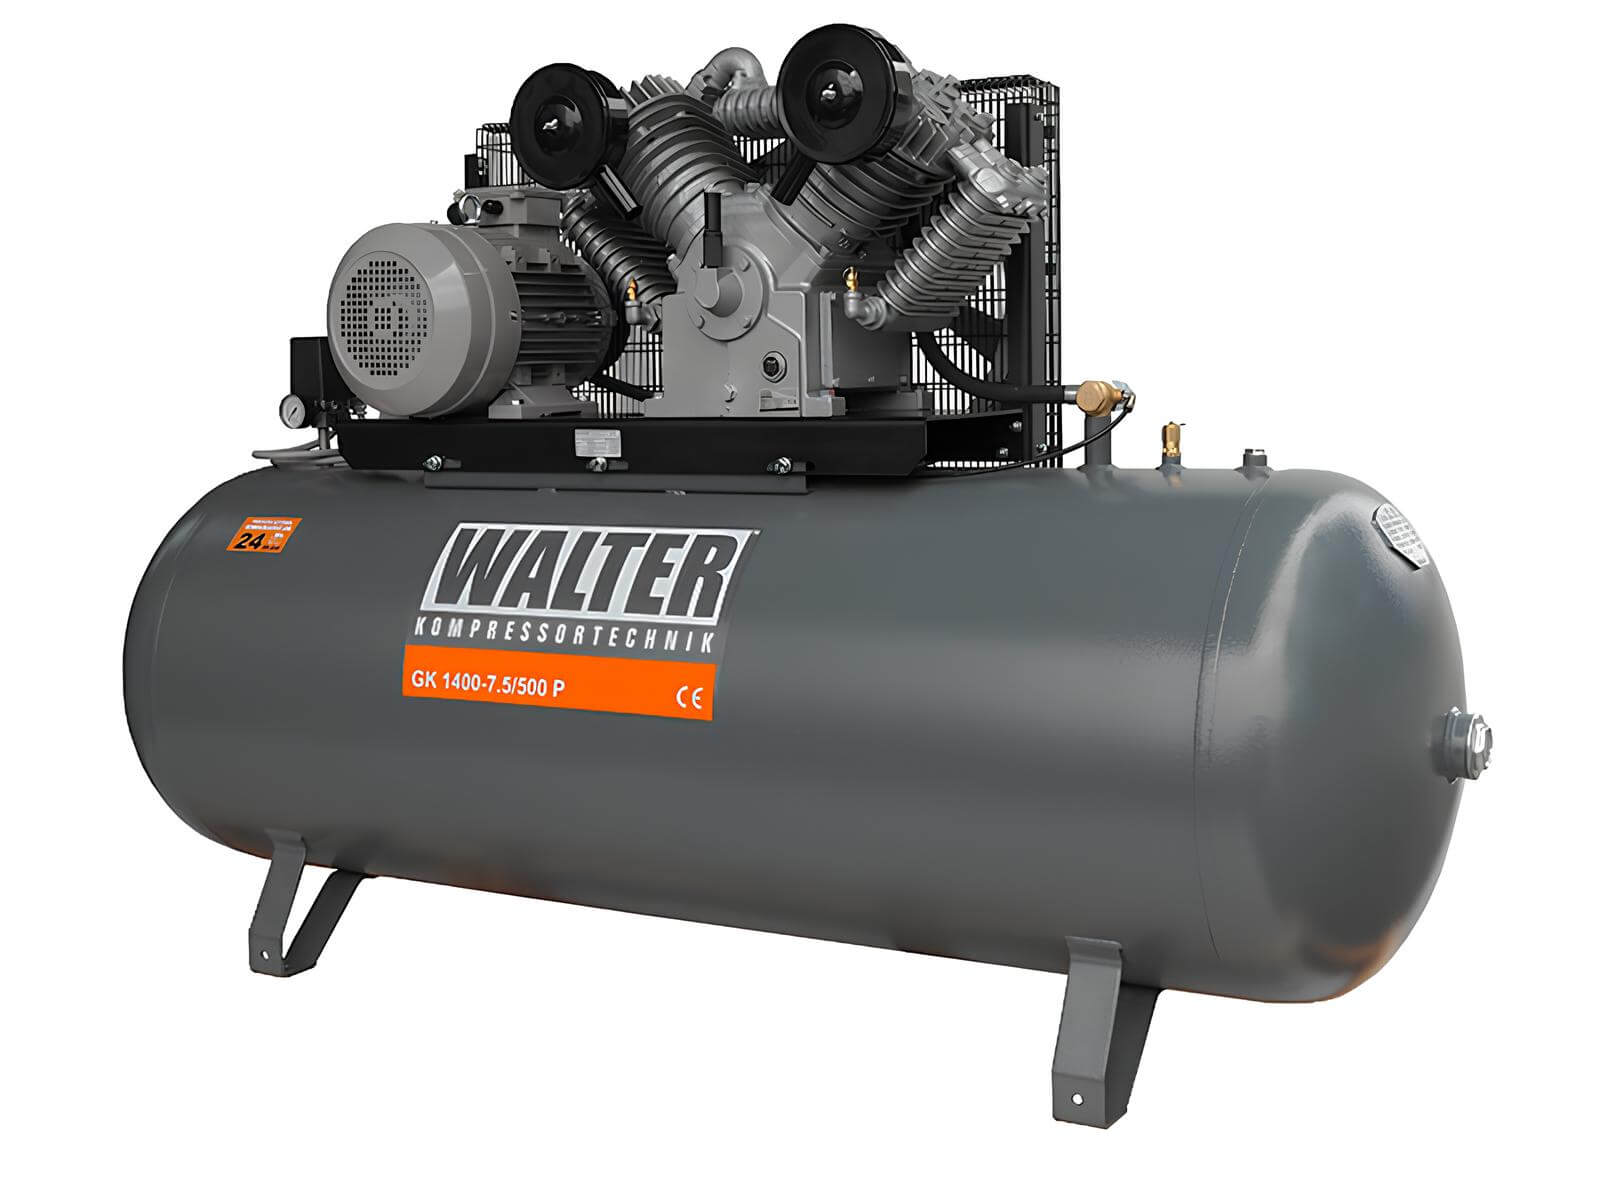 WALTER Litinový pístový kompresor GK1400-75-500 příkon 7,5 kW, sací výkon 1400 l/min, tlak 10 bar, vzdušník 500 l, napětí 400/50 V/Hz